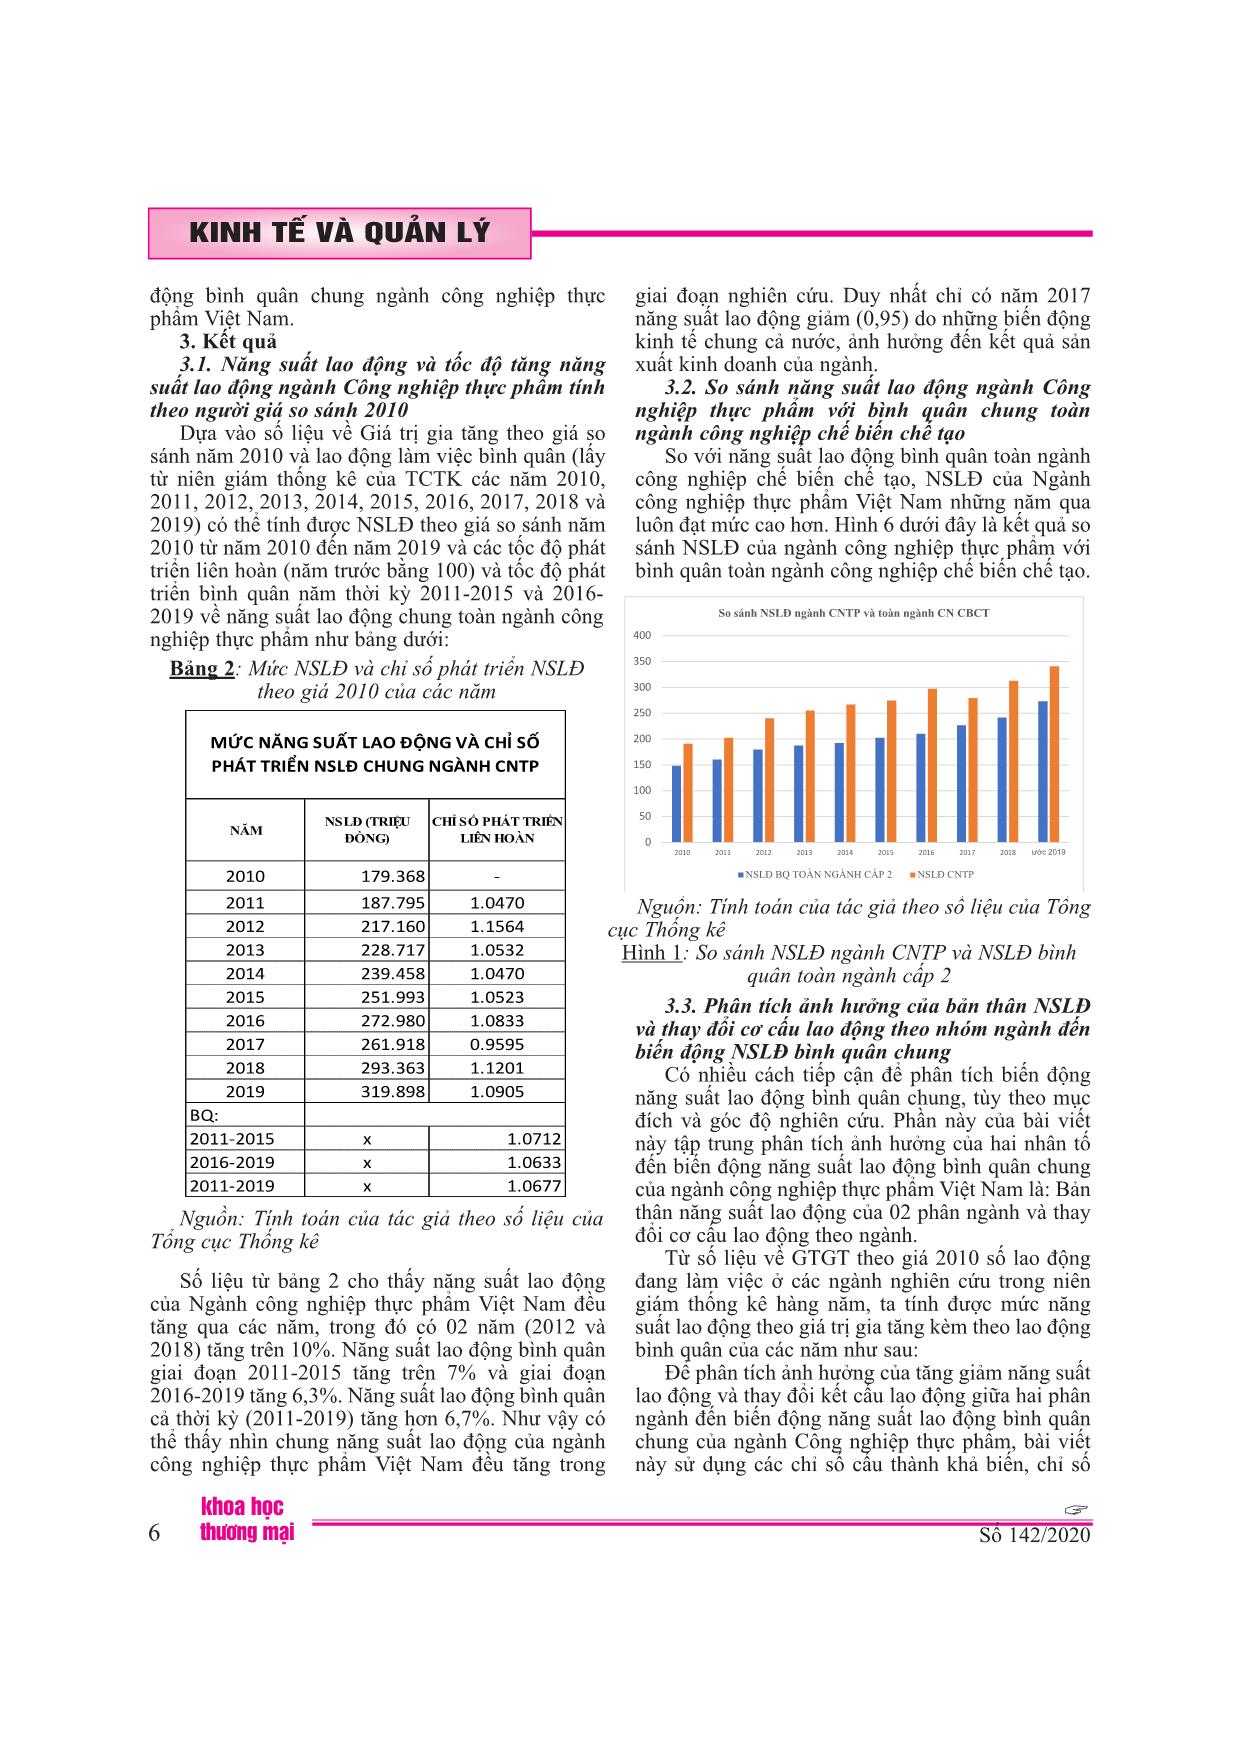 Phân tích biến động năng suất lao động ngành công nghiệp thực phẩm Việt Nam giai đoạn 2010-2018 trang 6